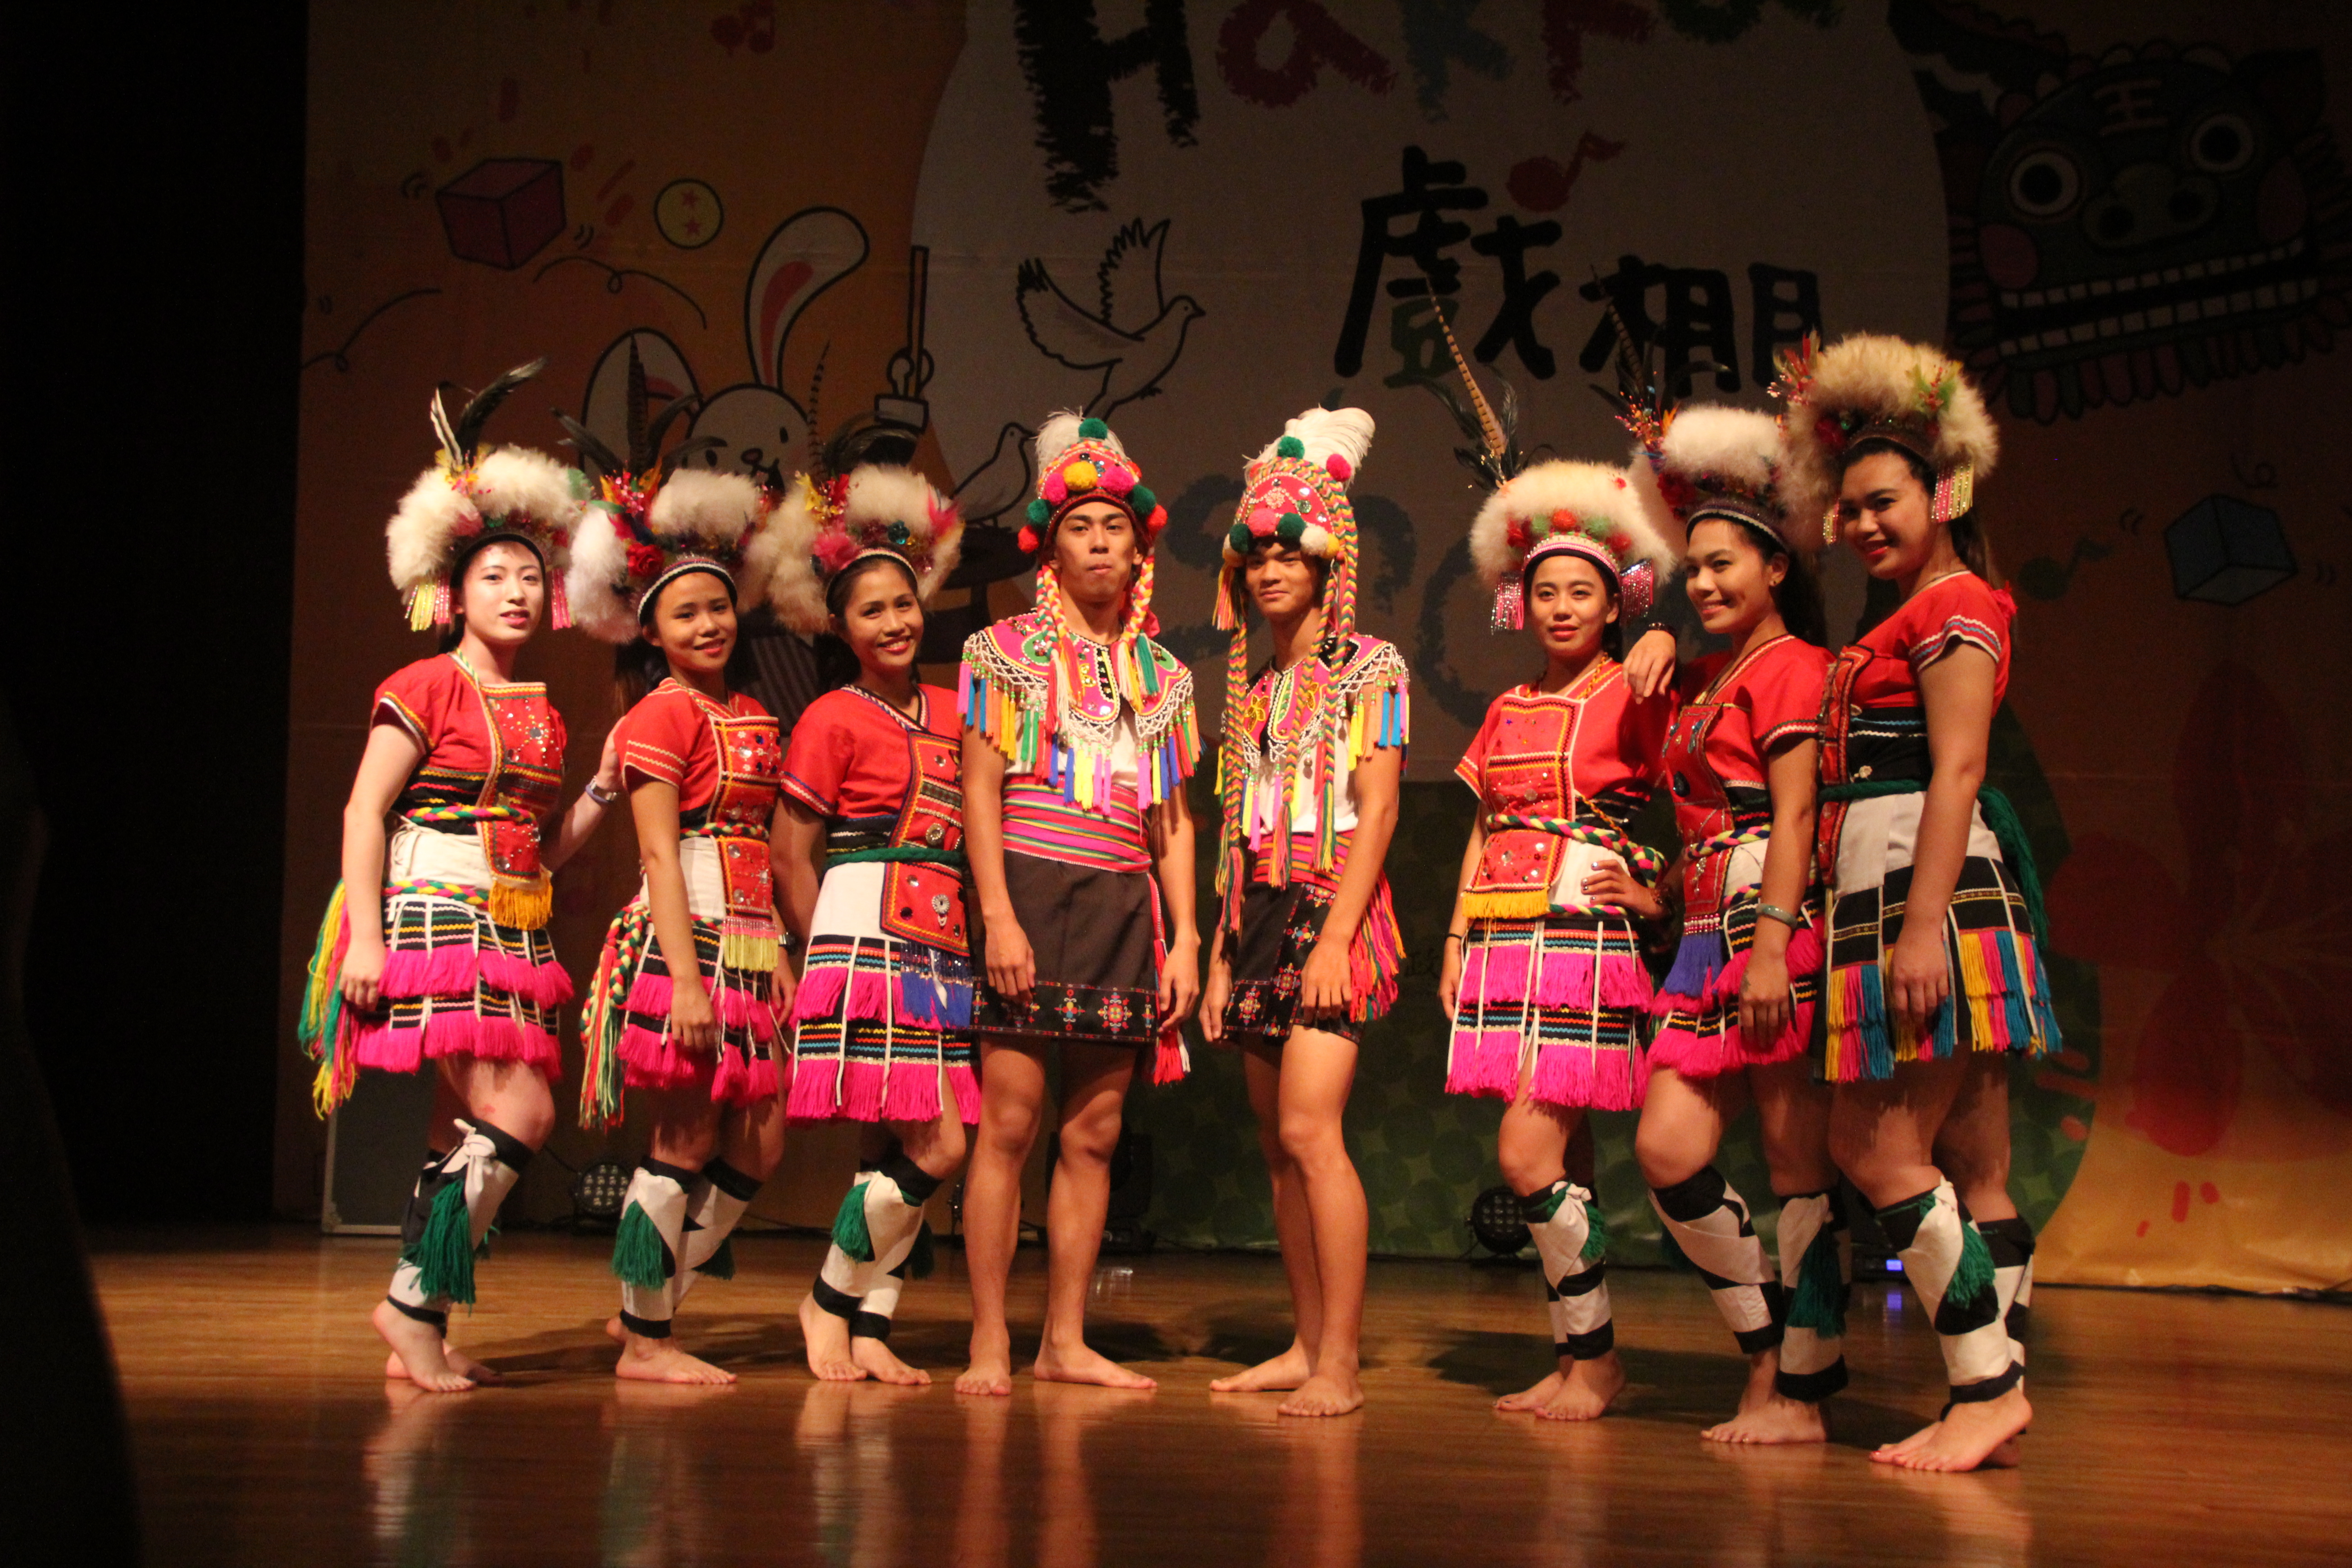 破傳統框架 青年歌舞促文化交流 | 華視新聞